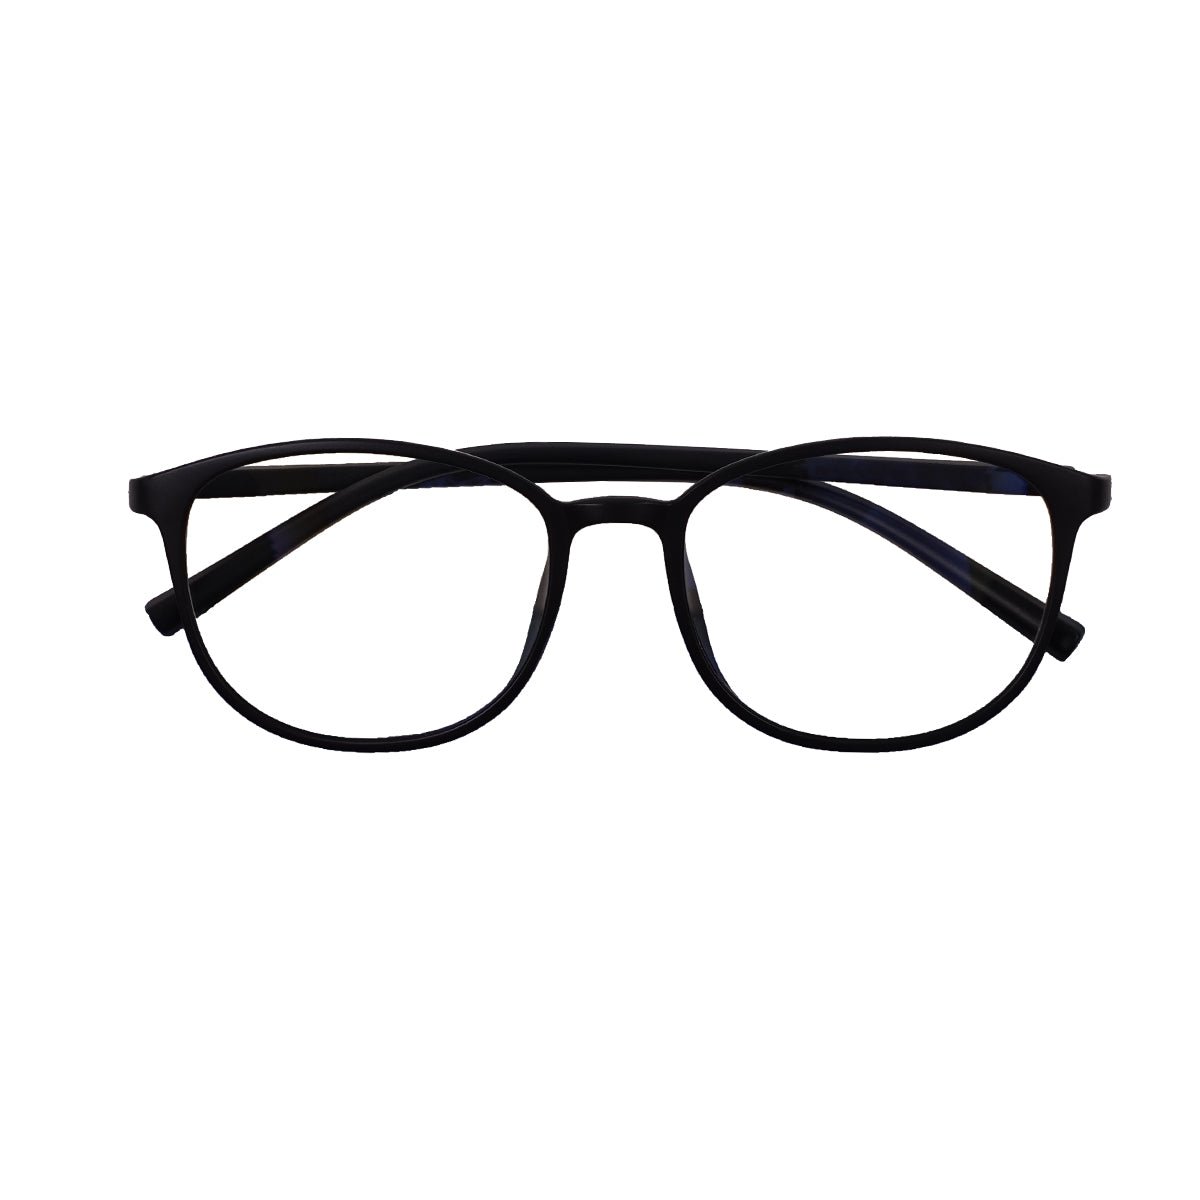 Epic Gamers Glasses V2 - Matte Black - Store 974 | ستور ٩٧٤